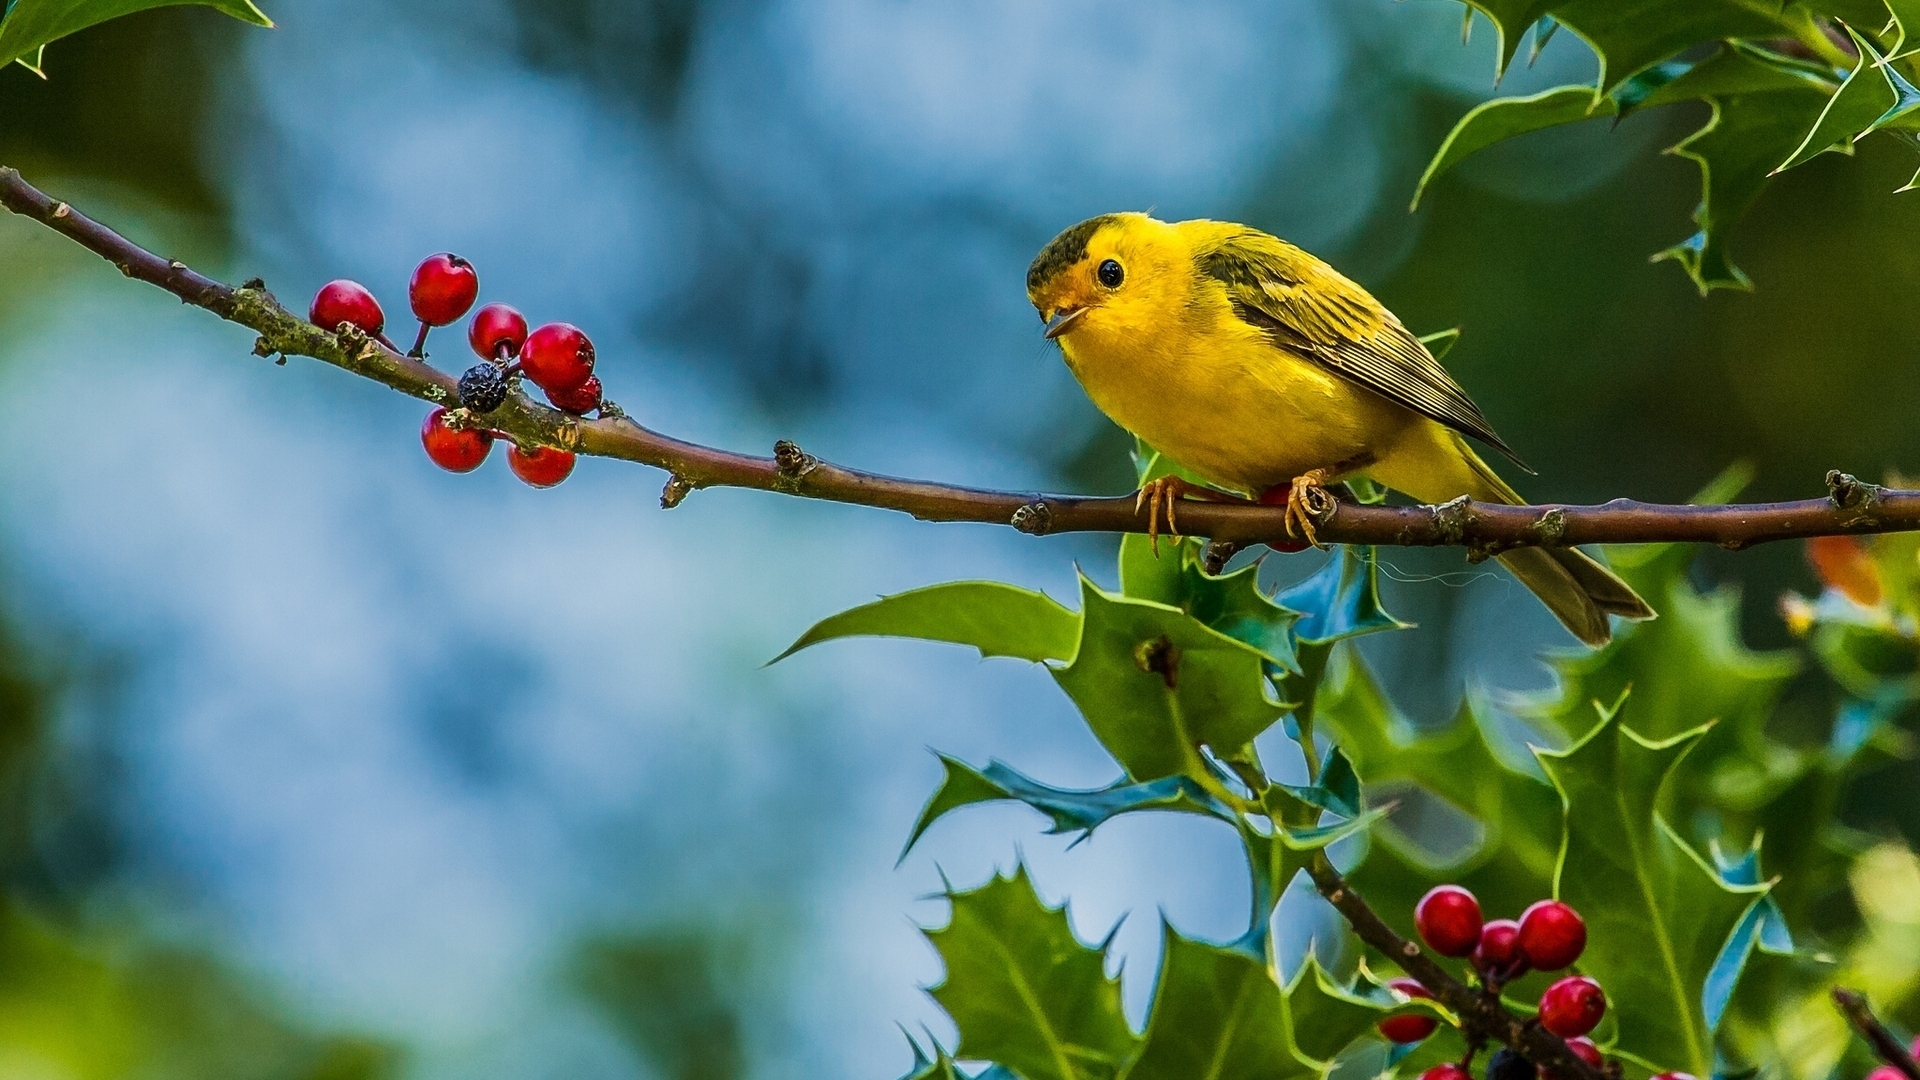 Cute Little Yellow Bird for 1920 x 1080 HDTV 1080p resolution